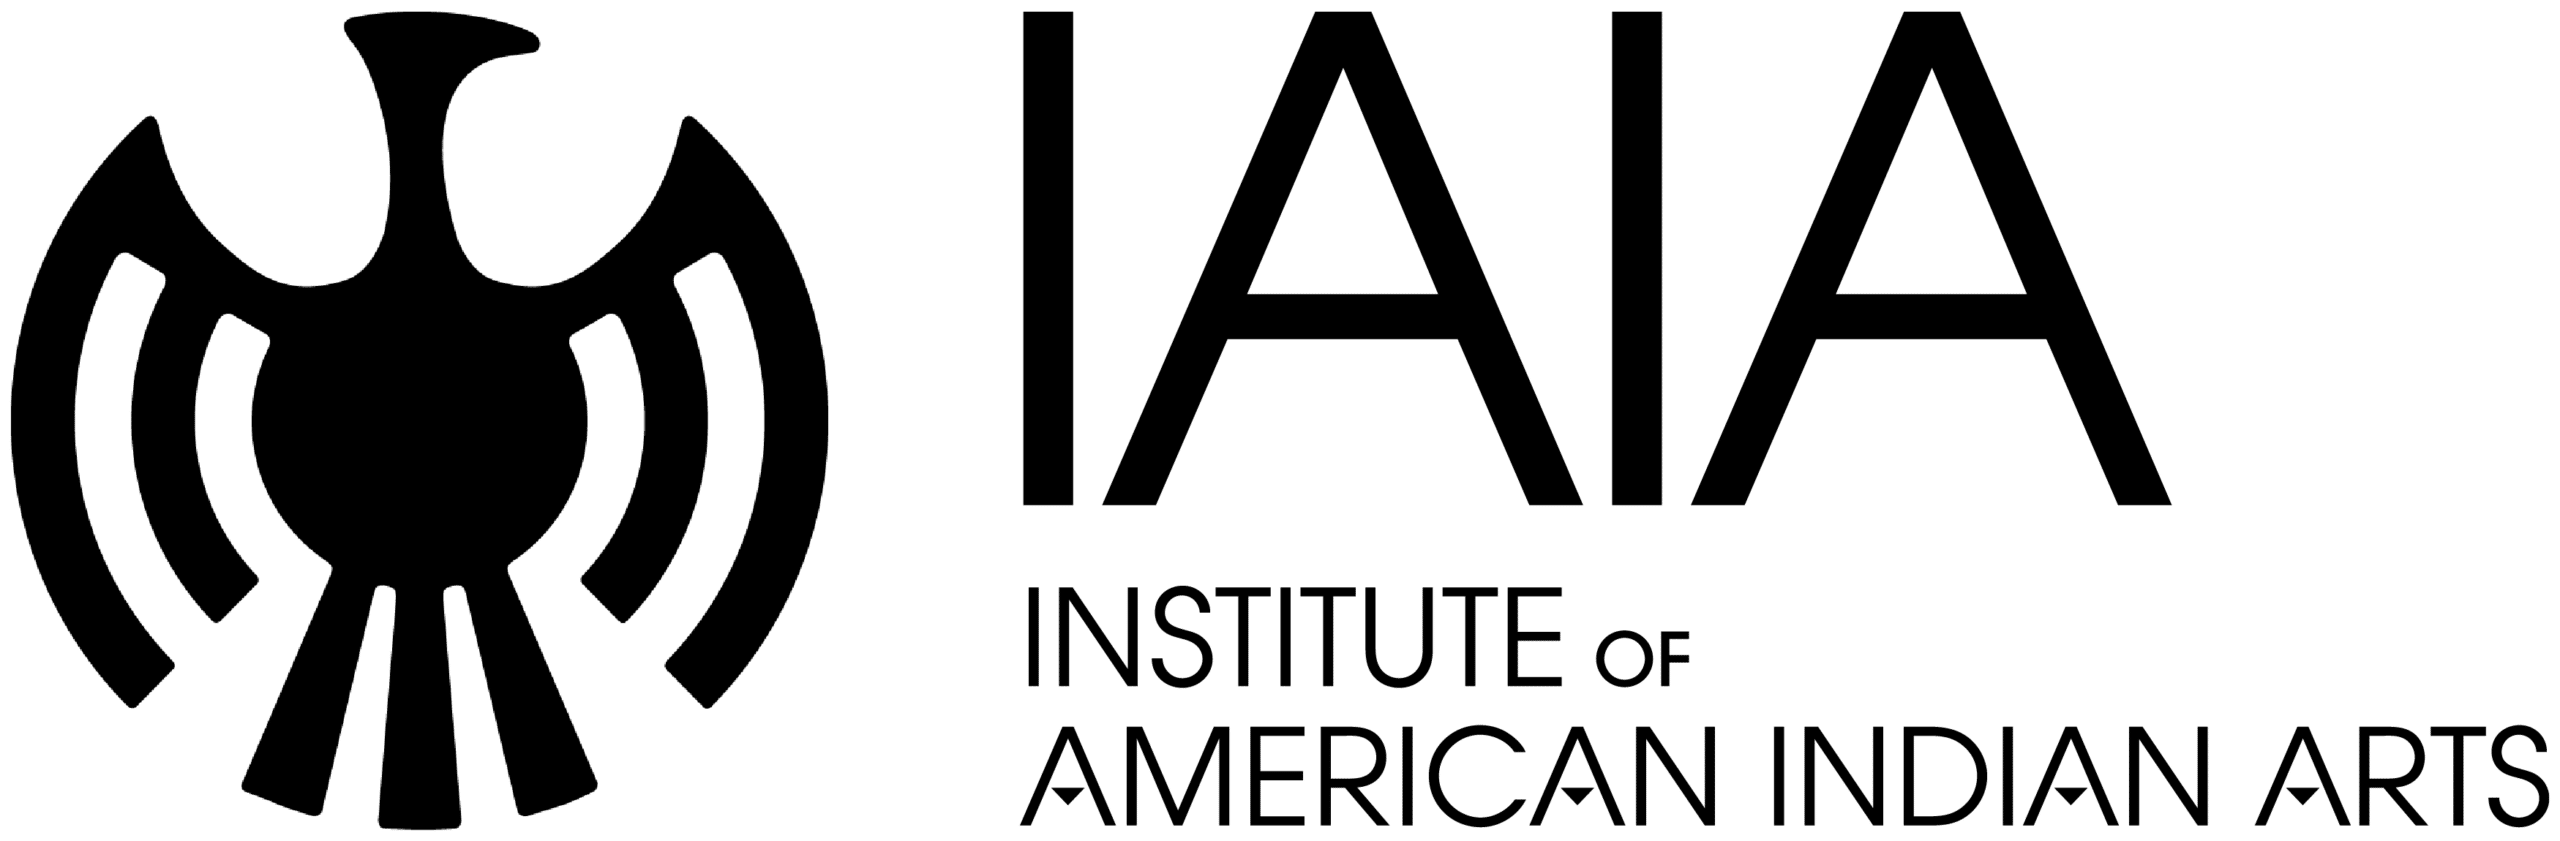 IAIA logo